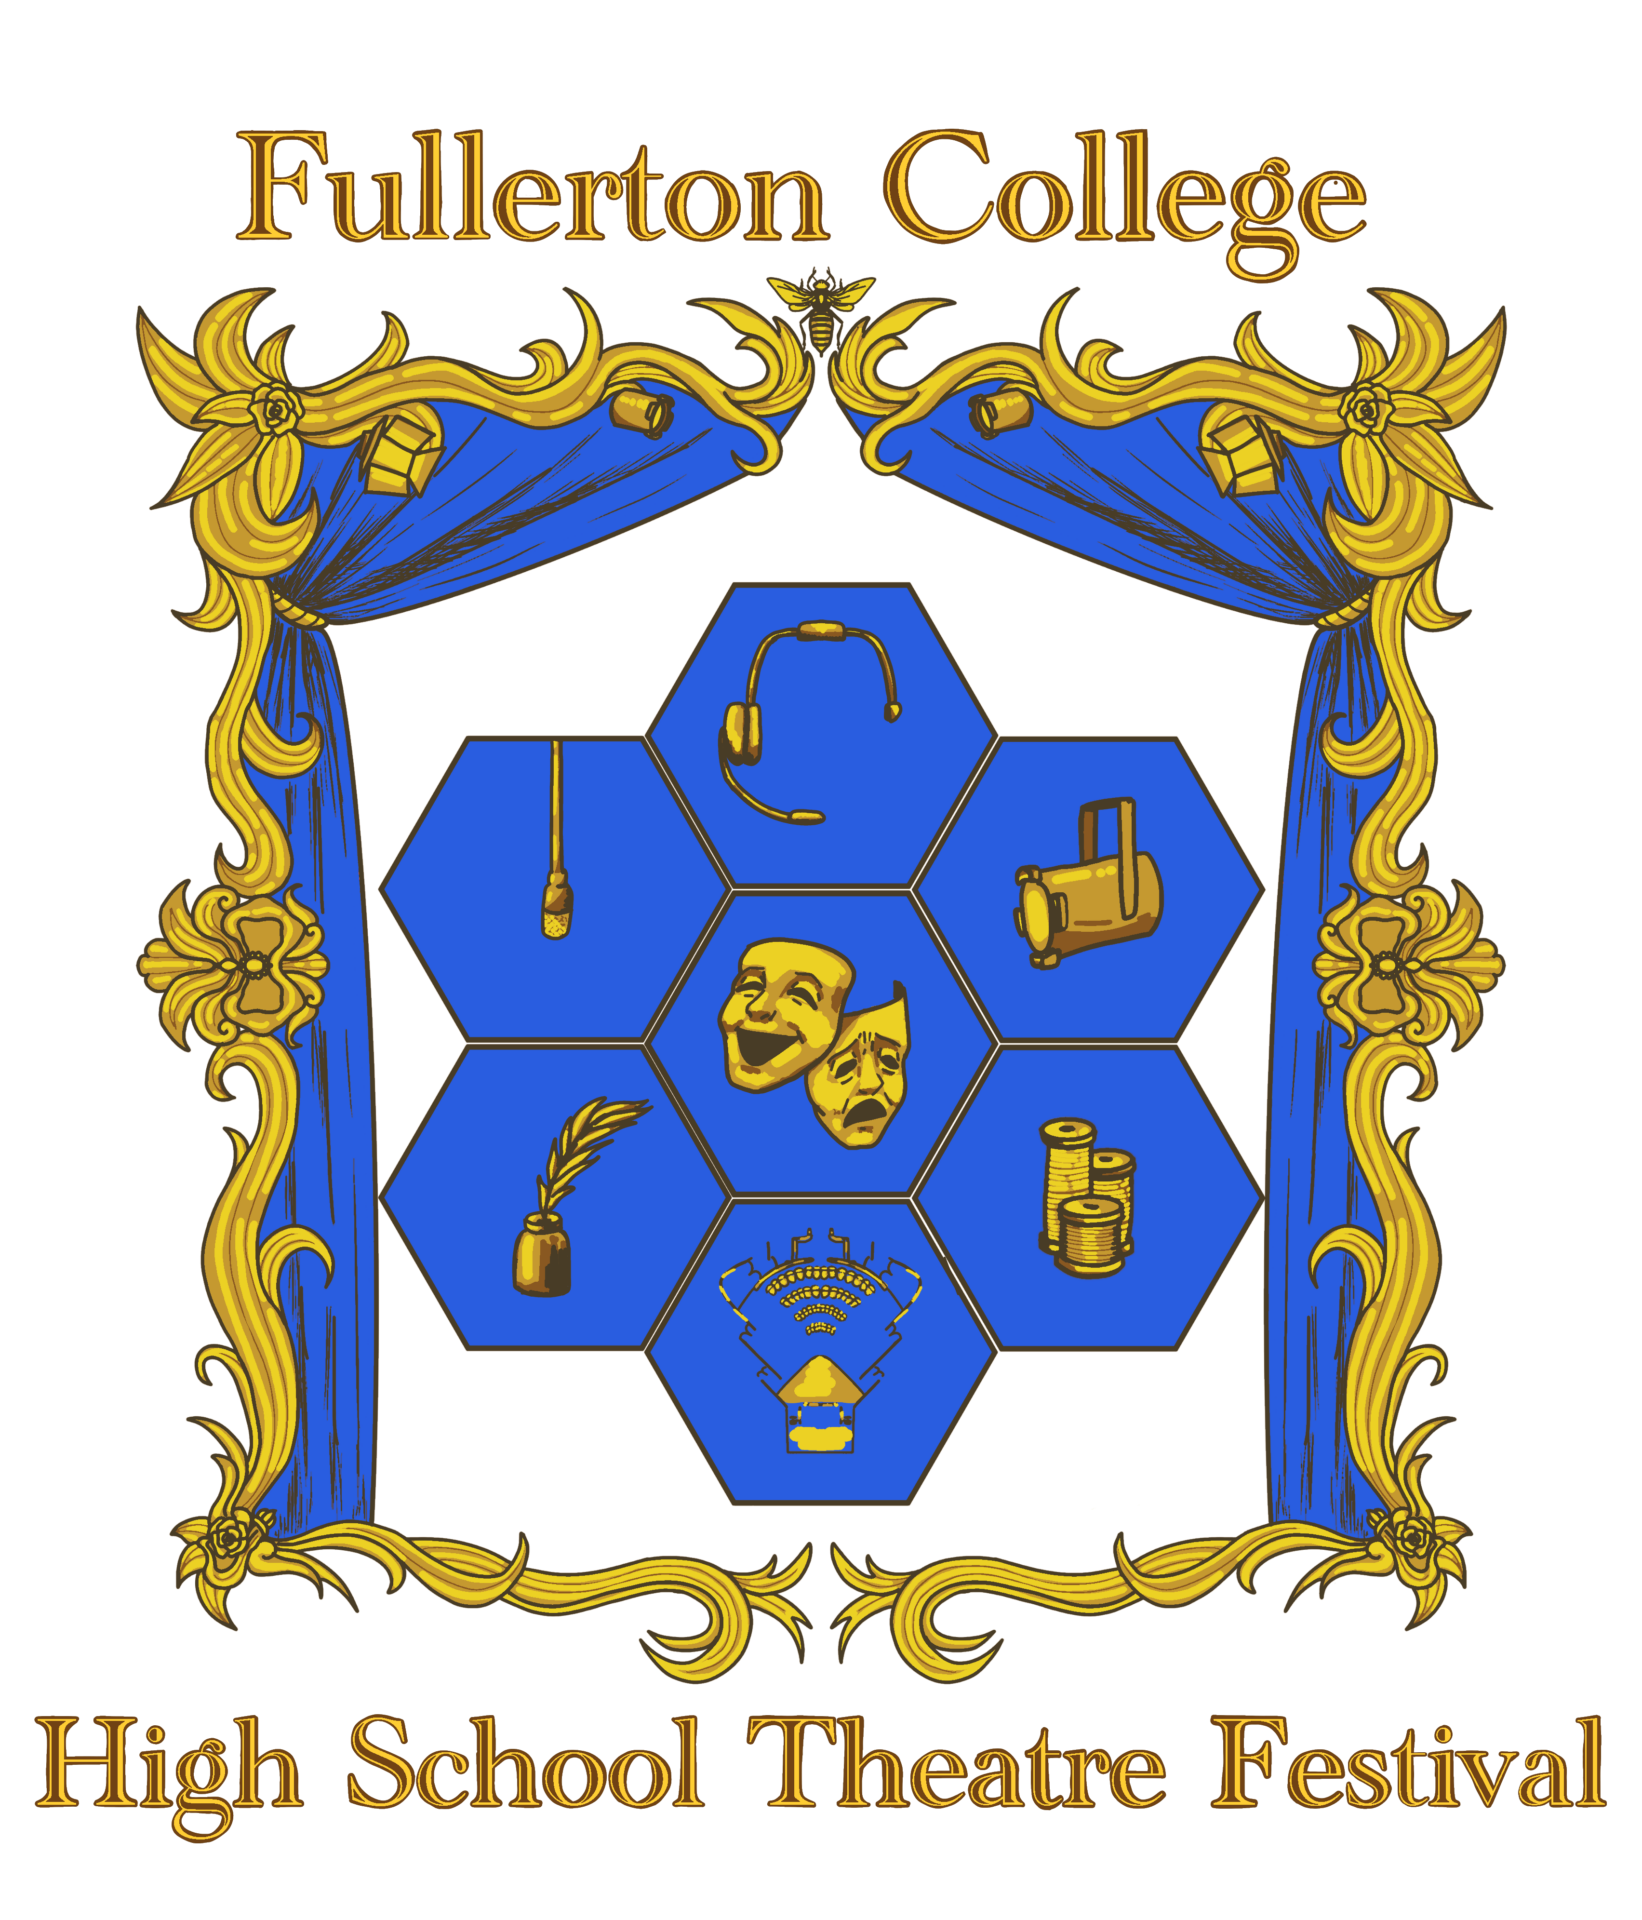 Fullerton College High School Theatre Festival Carpe Pulpitum